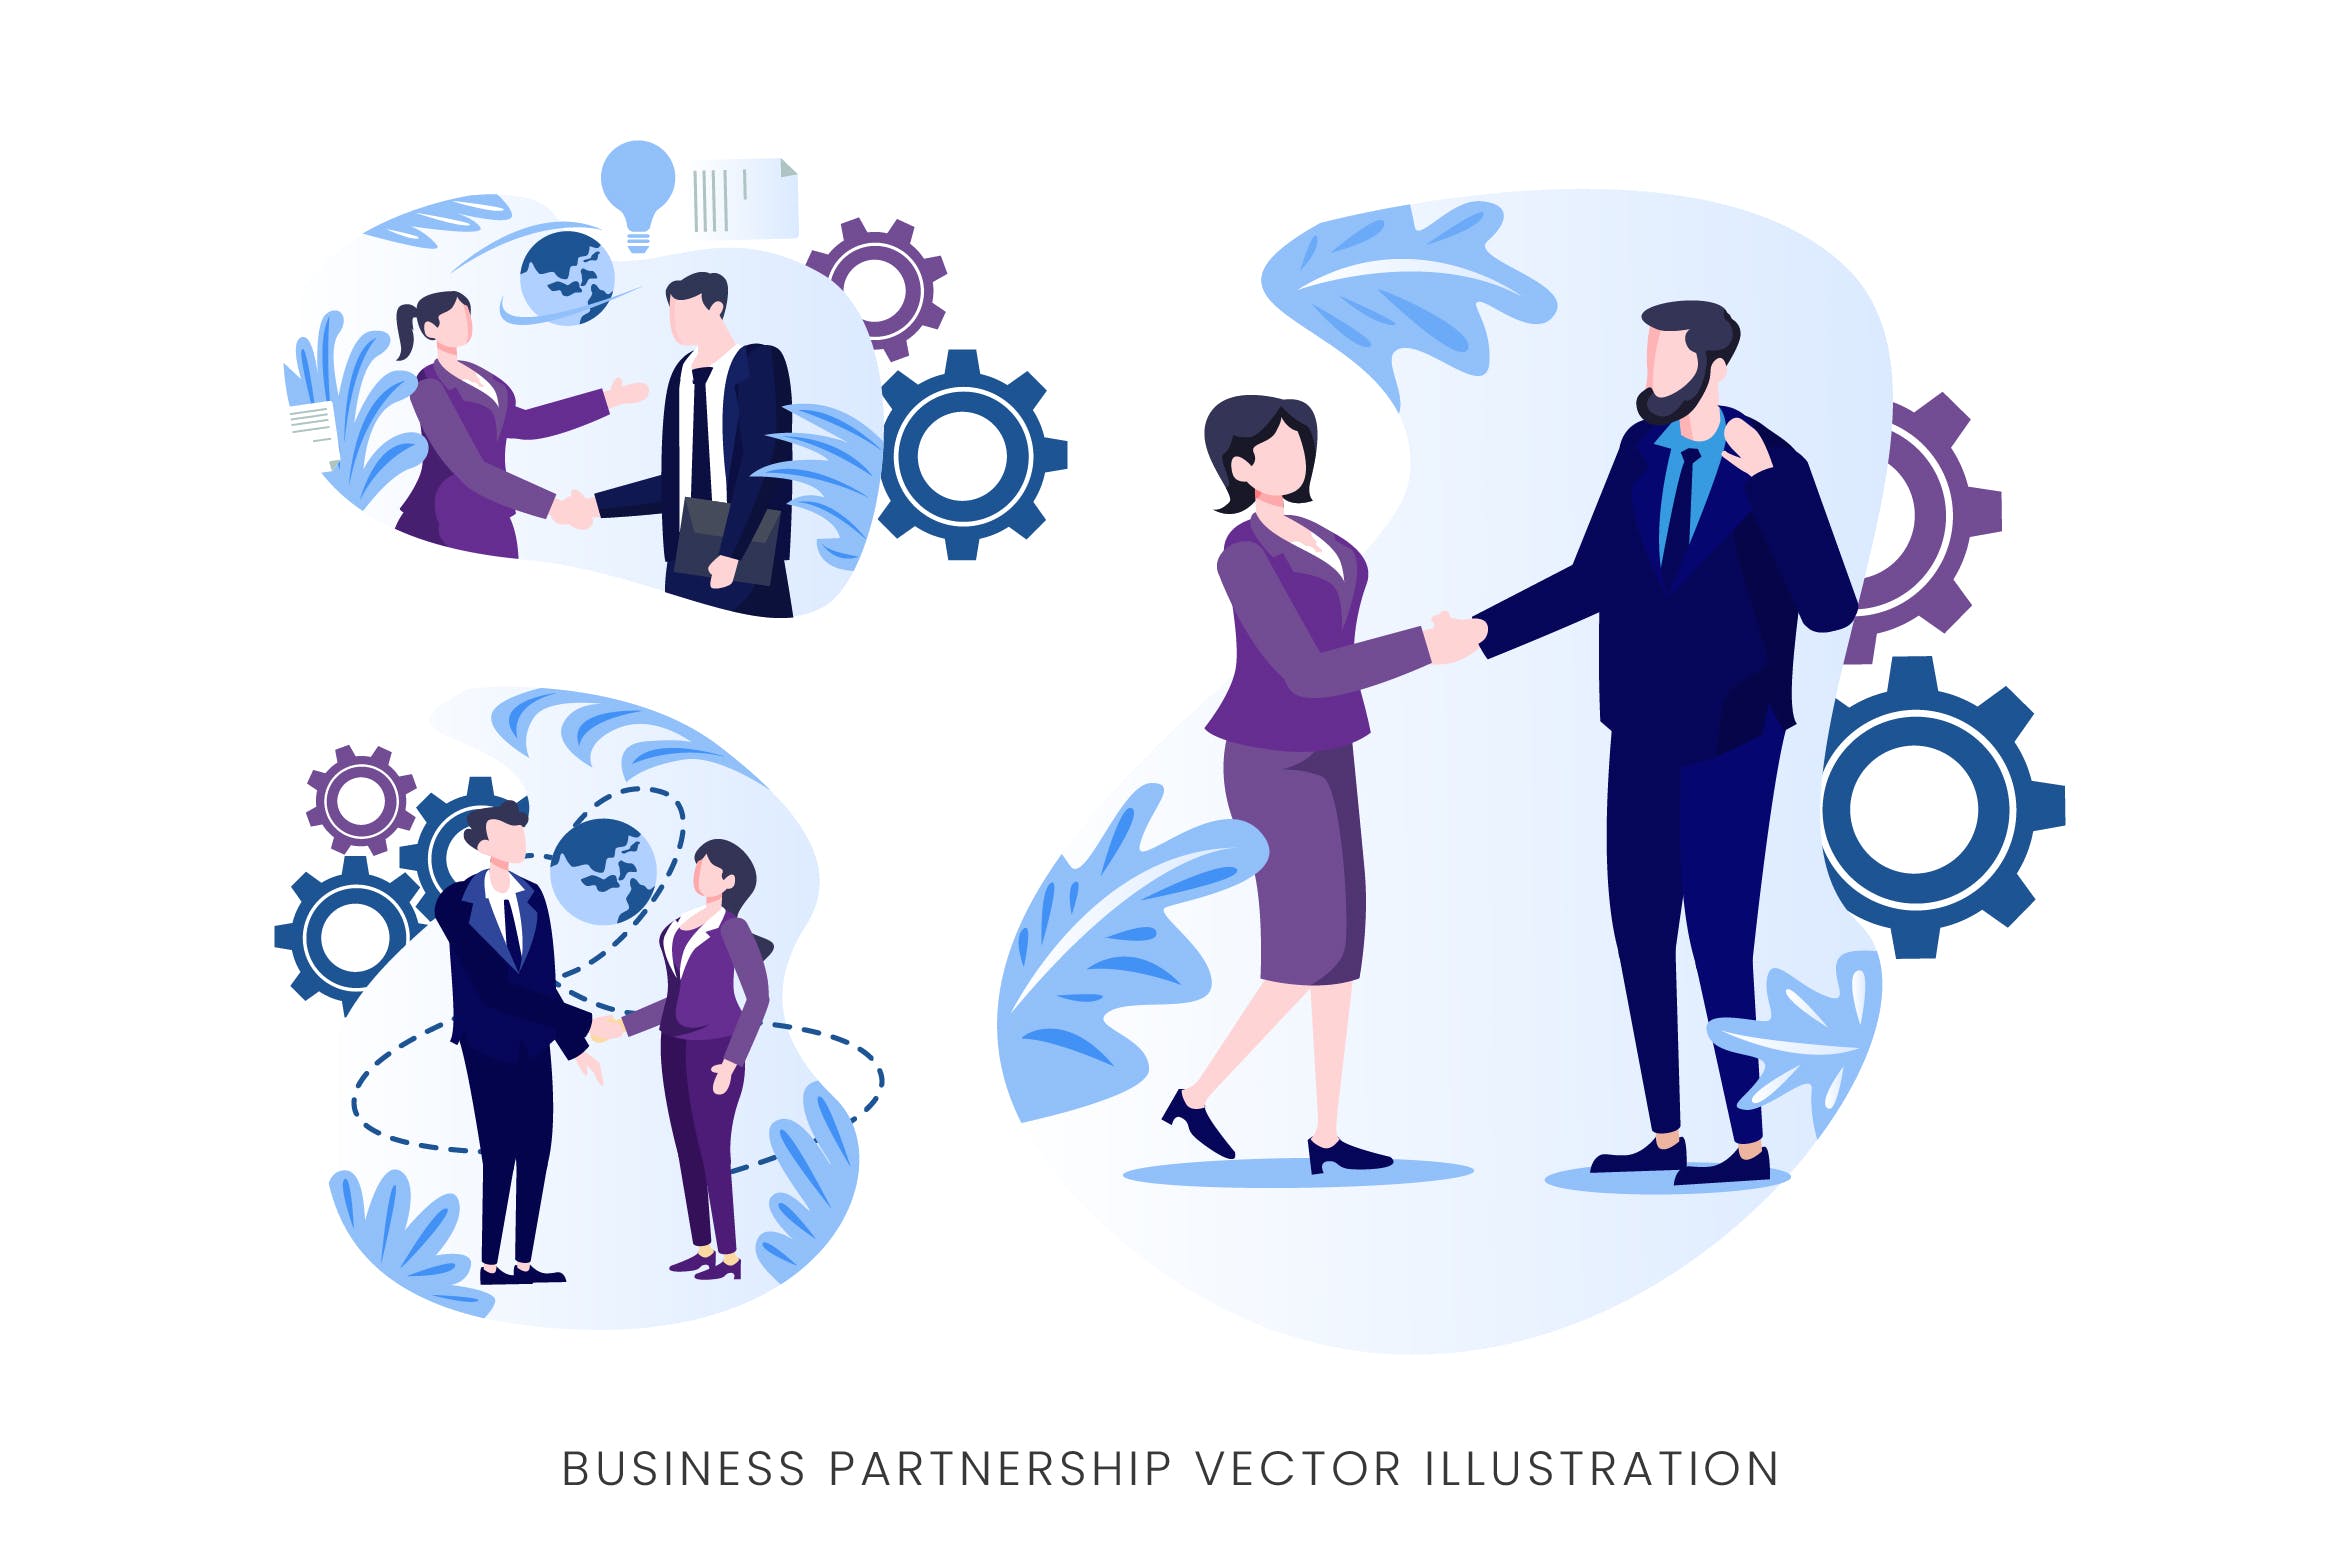 业务伙伴关系人物形象第一素材精选手绘插画矢量素材 Business Partnership Vector Character Set插图